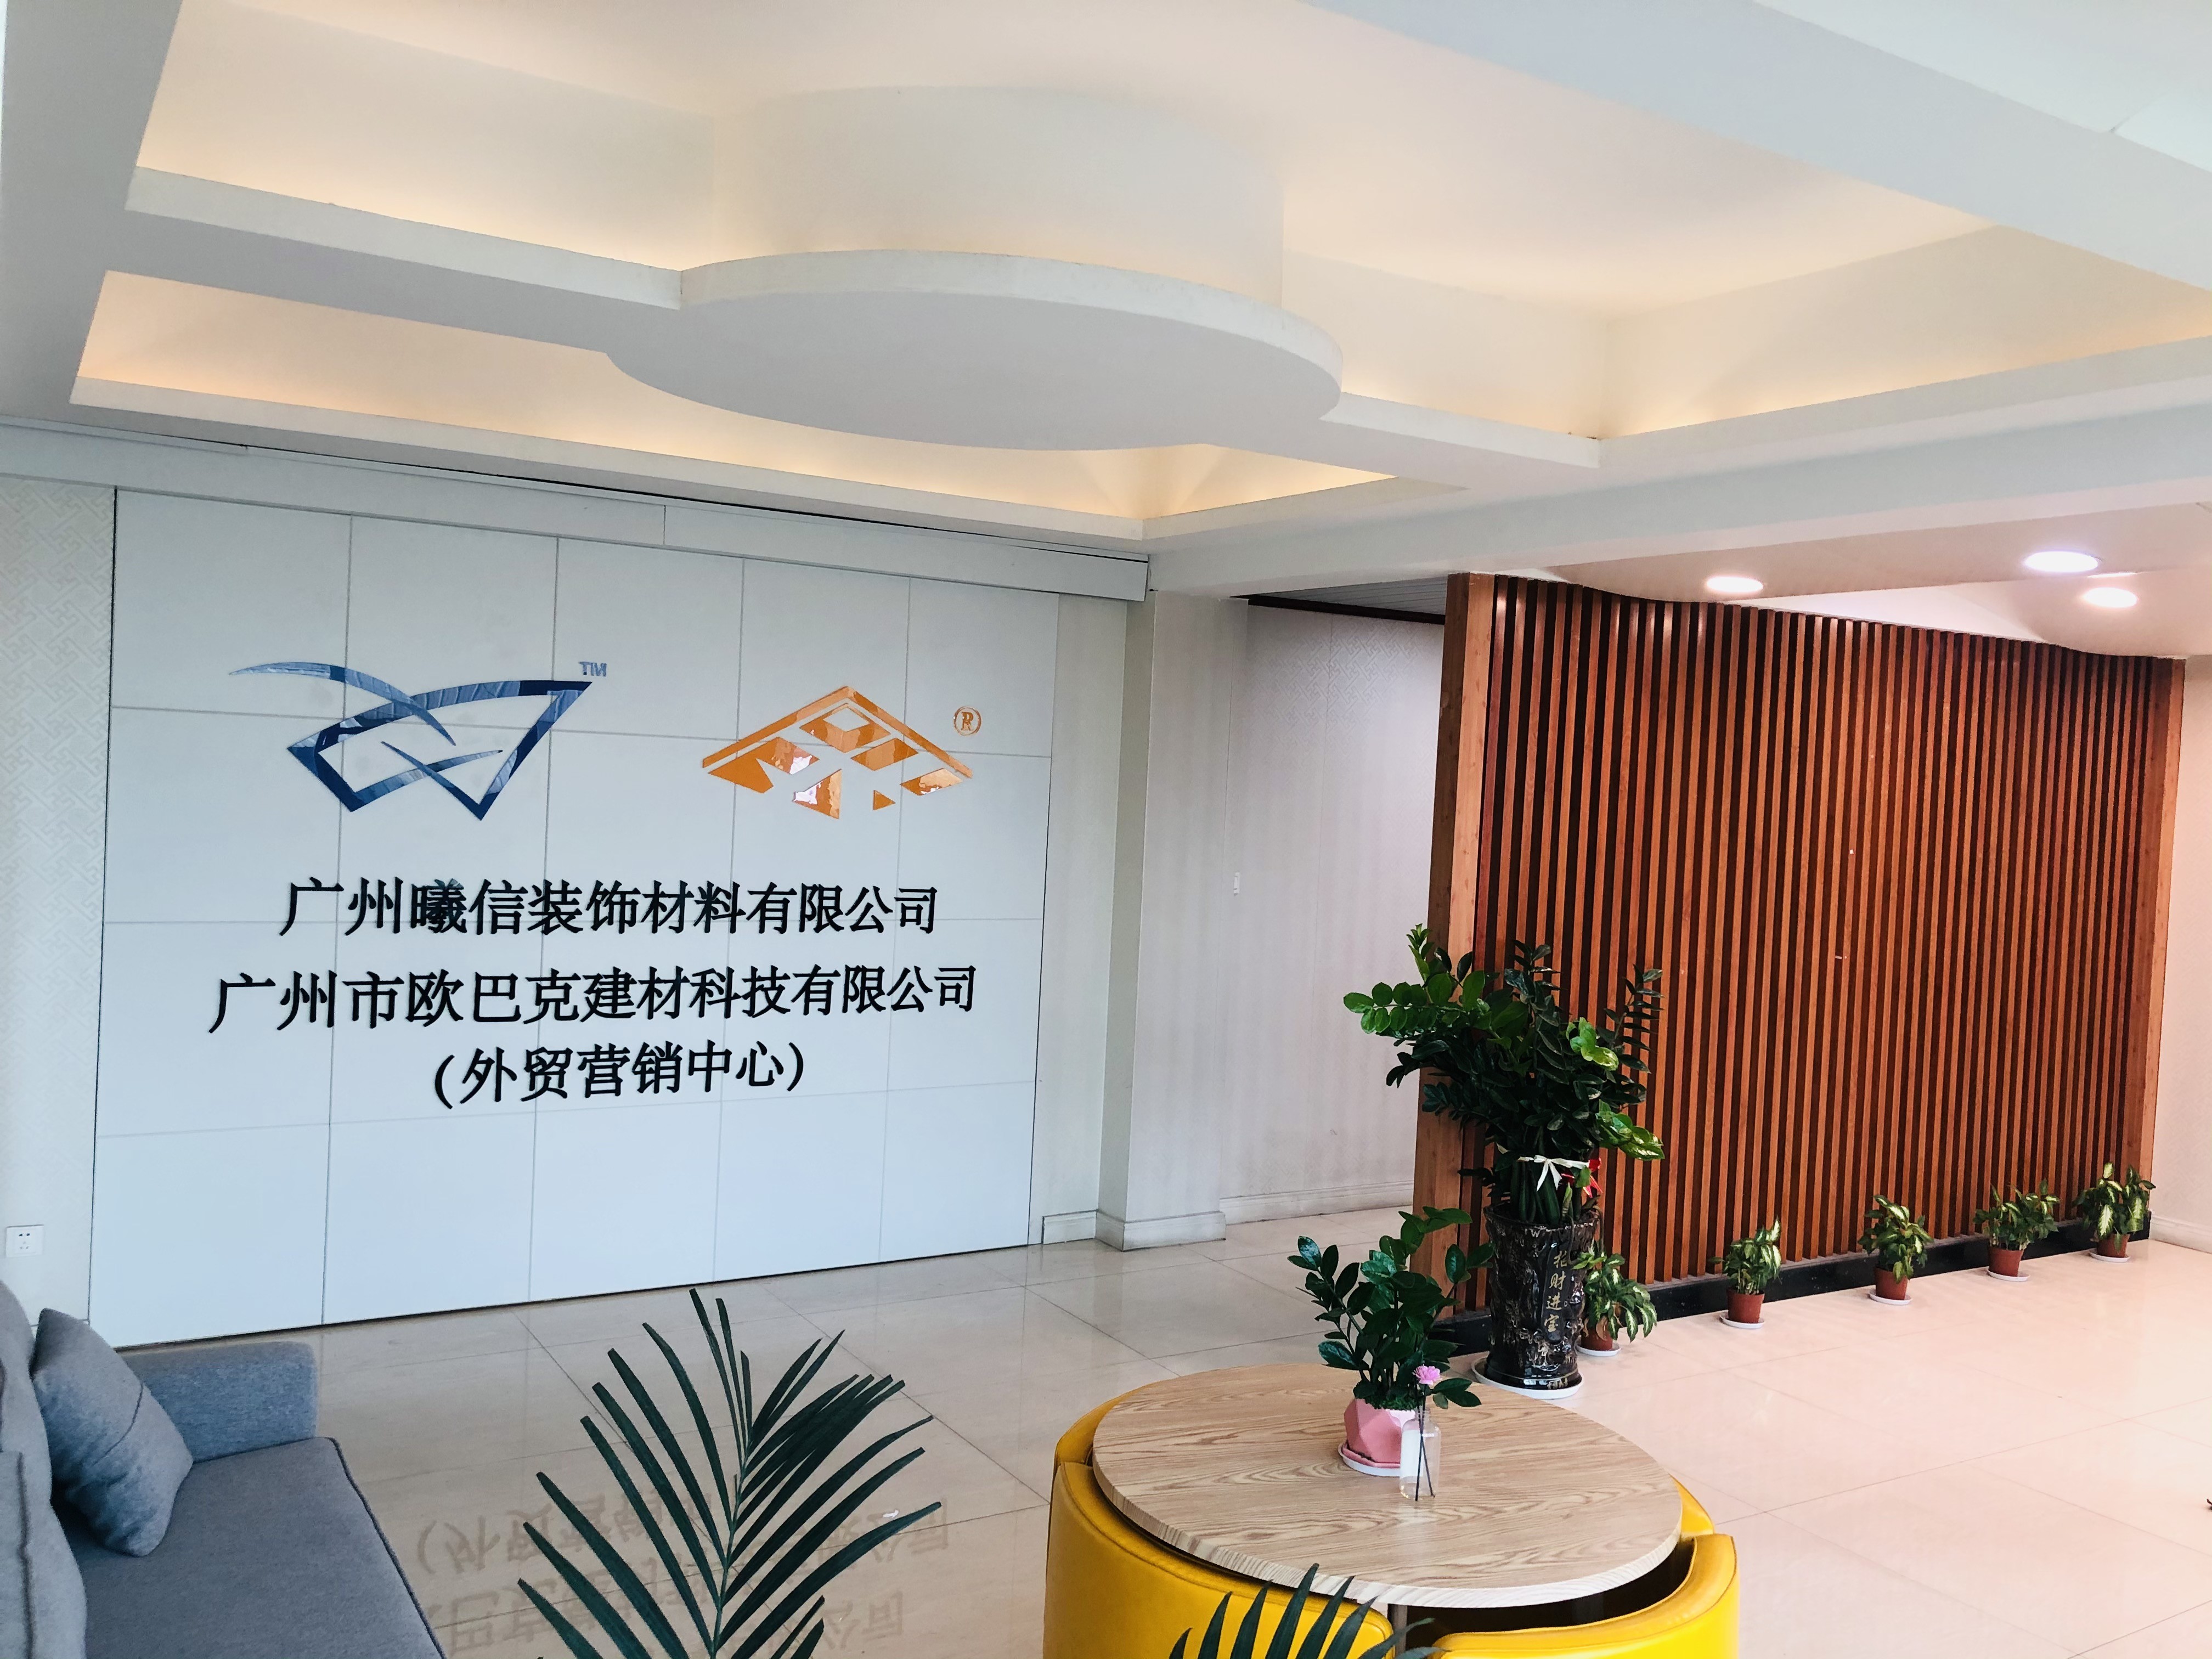 Chine Guangzhou Season Decoration Materials Co., Ltd. Profil de la société